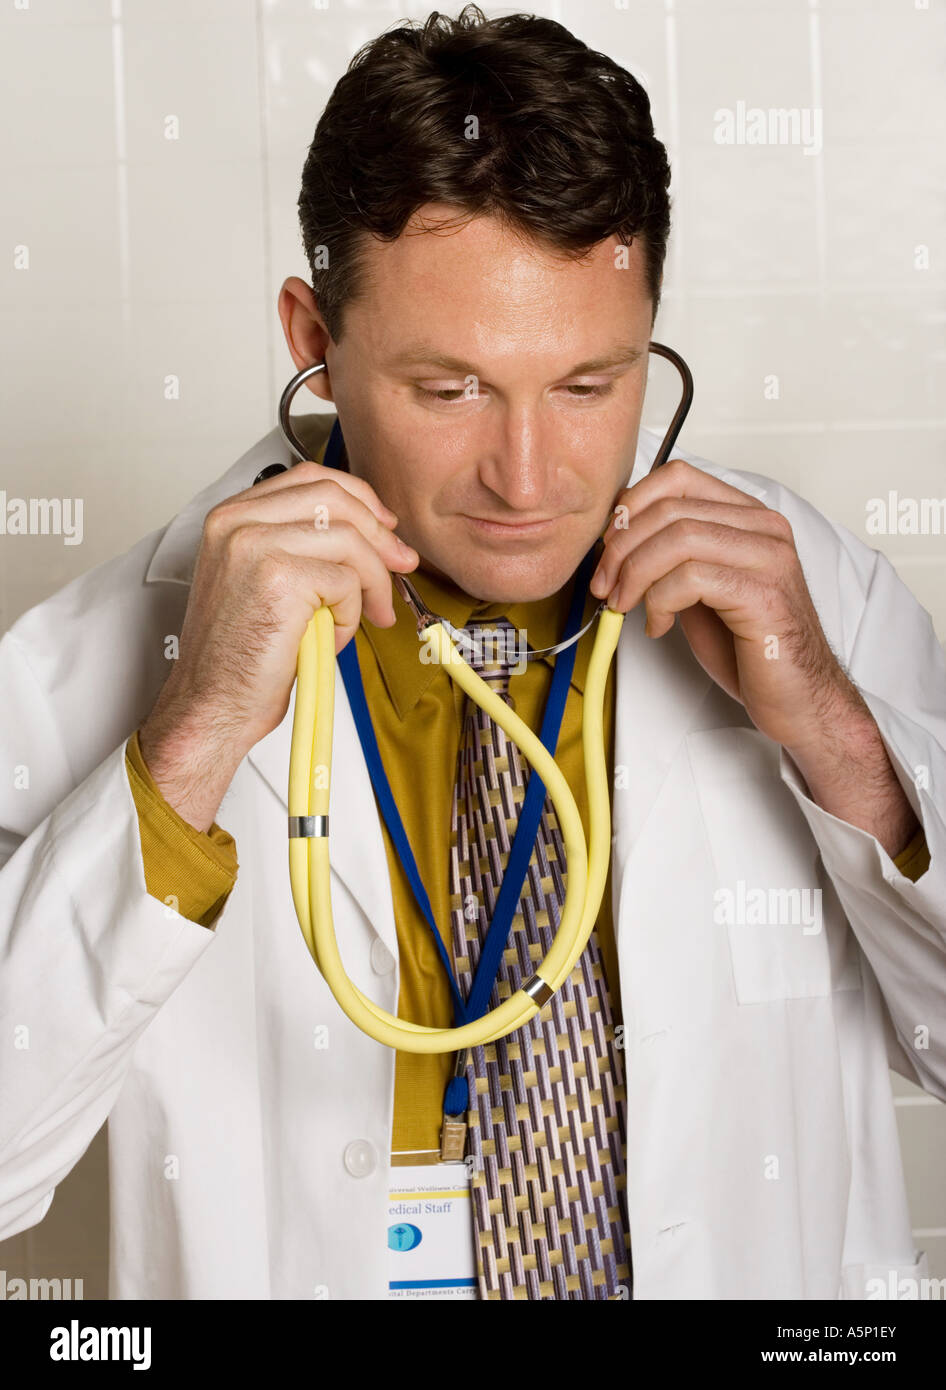 Professionnel médical stéthoscope prépare comme un examen est sur le point de commencer. Banque D'Images